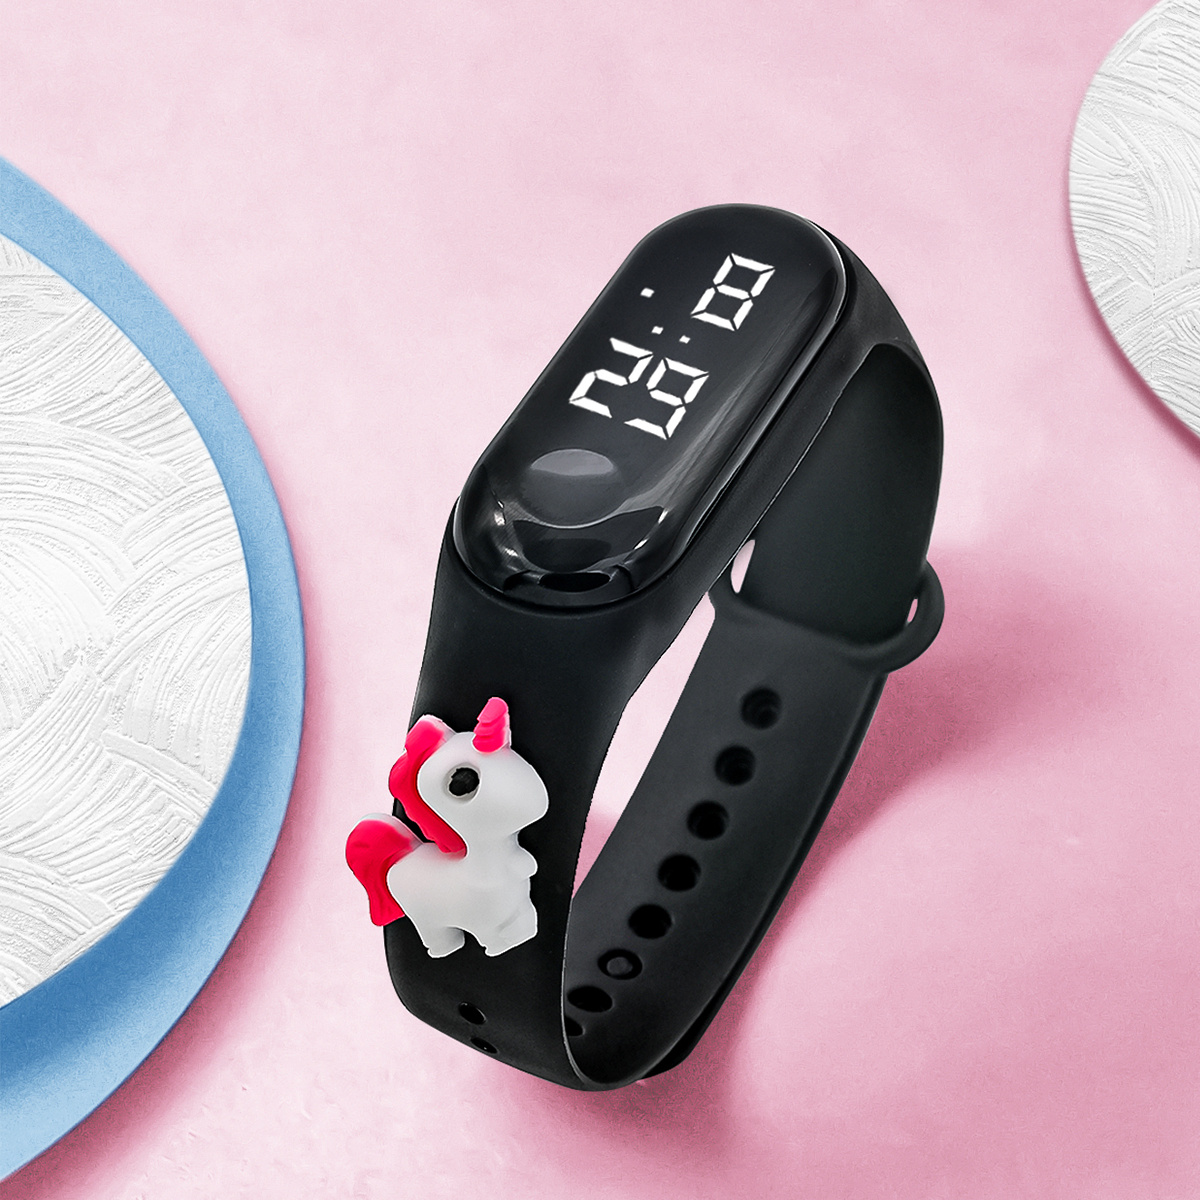 2 relojes de unicornio 3D para niños, lindo reloj de pulsera de dibujos  animados, reloj eléctrico de unicornio, reloj deportivo digital impermeable